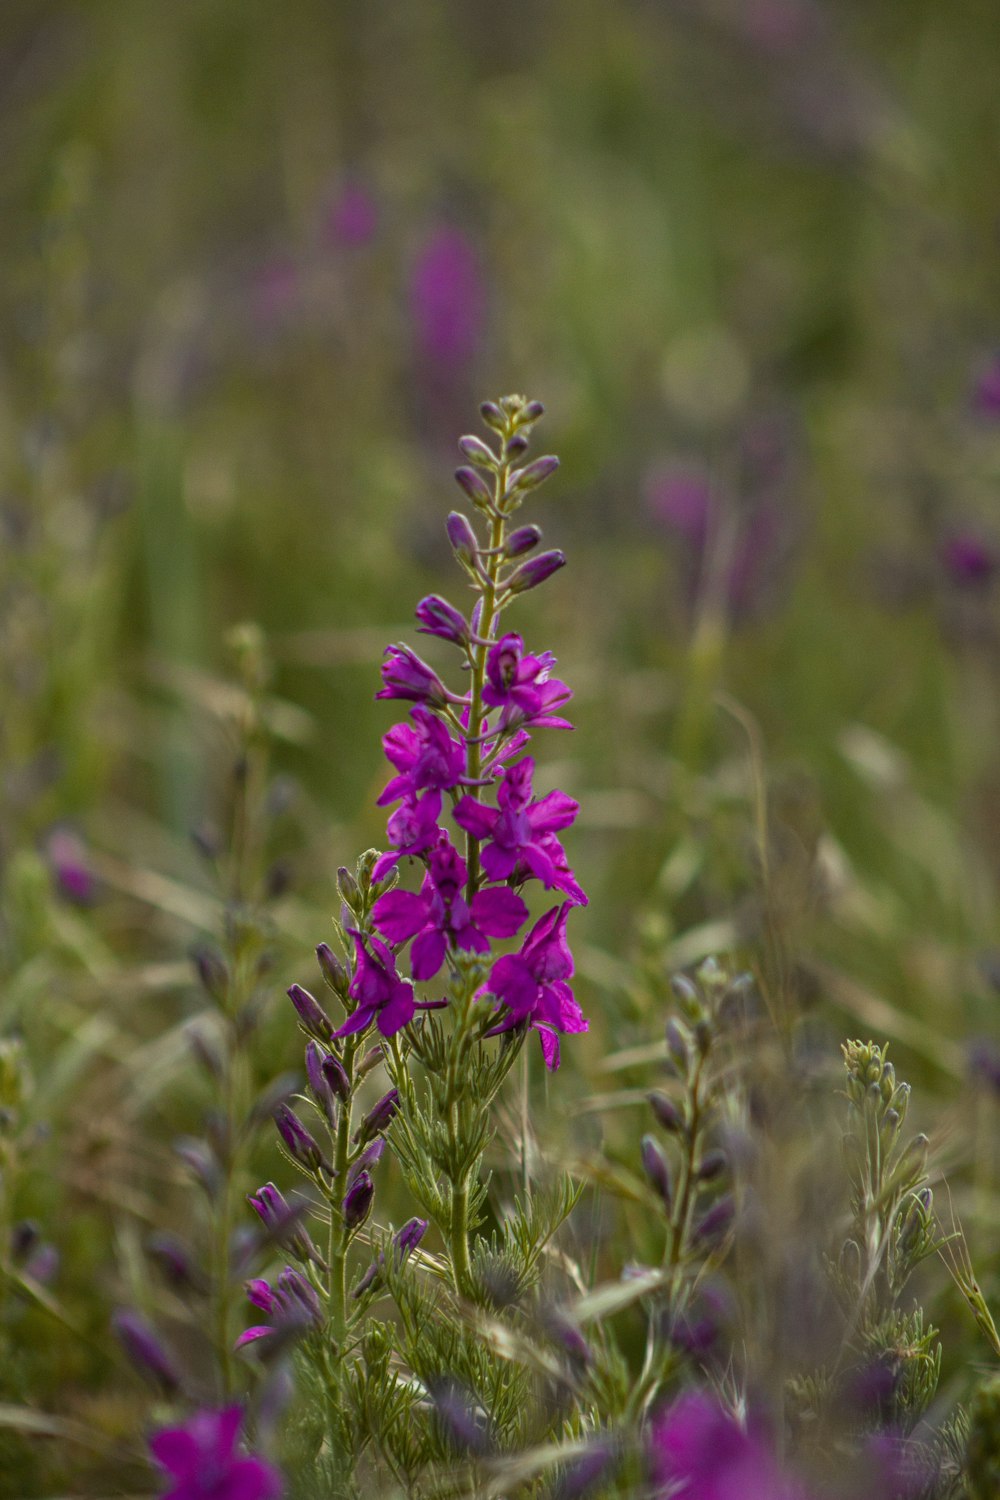 a purple flower in a field of purple flowers